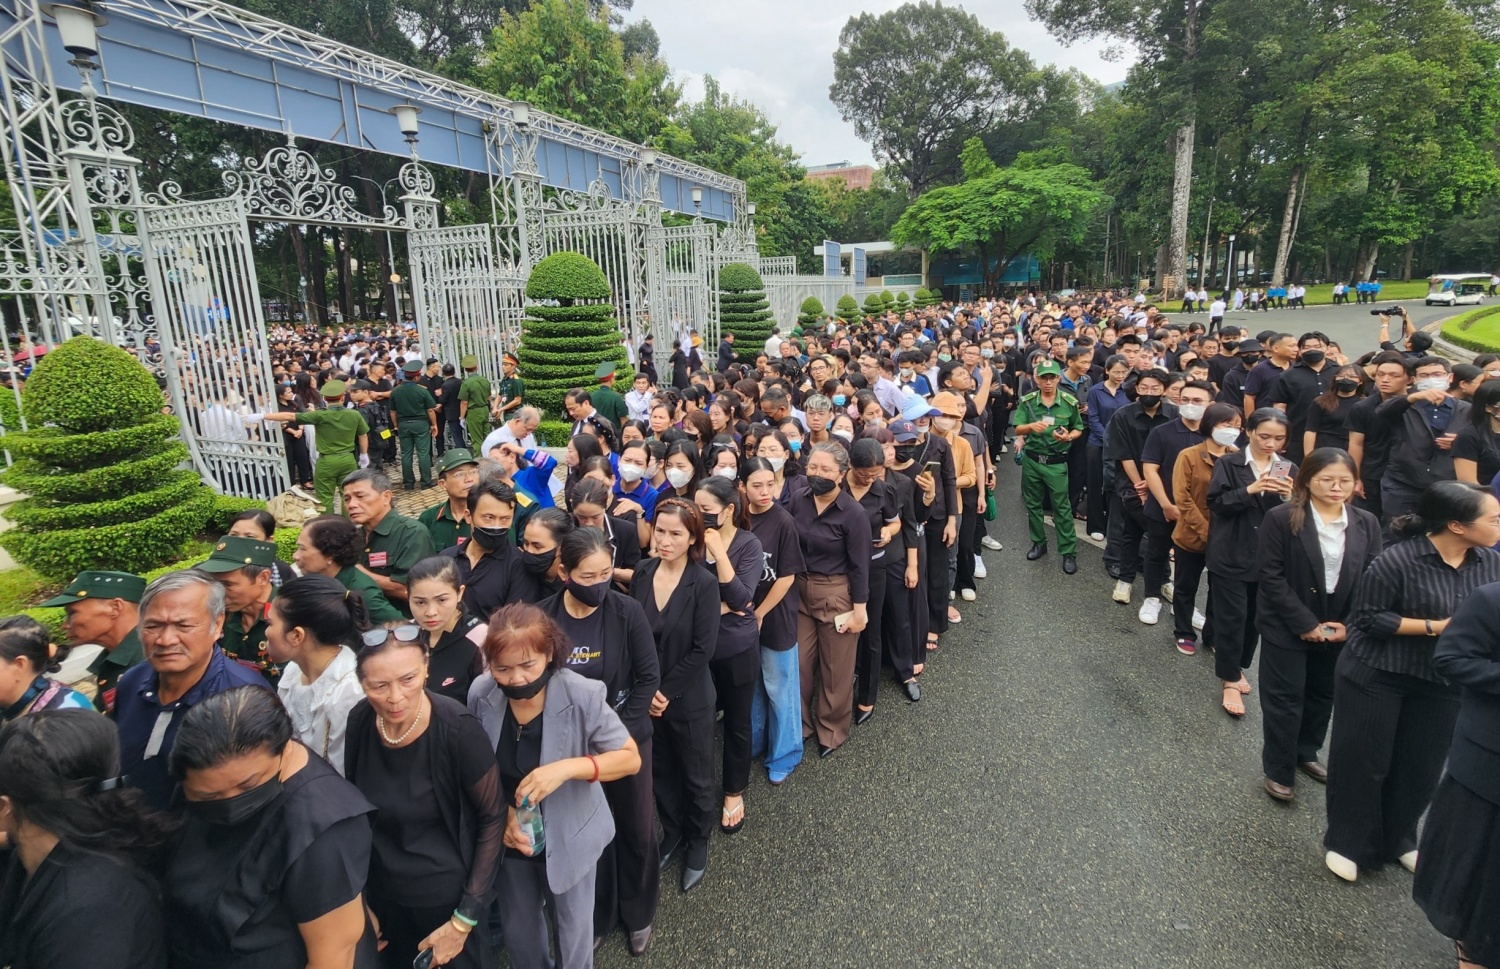 TP HCM: Dòng người xếp hàng dài chờ vào viếng Tổng Bí thư Nguyễn Phú Trọng